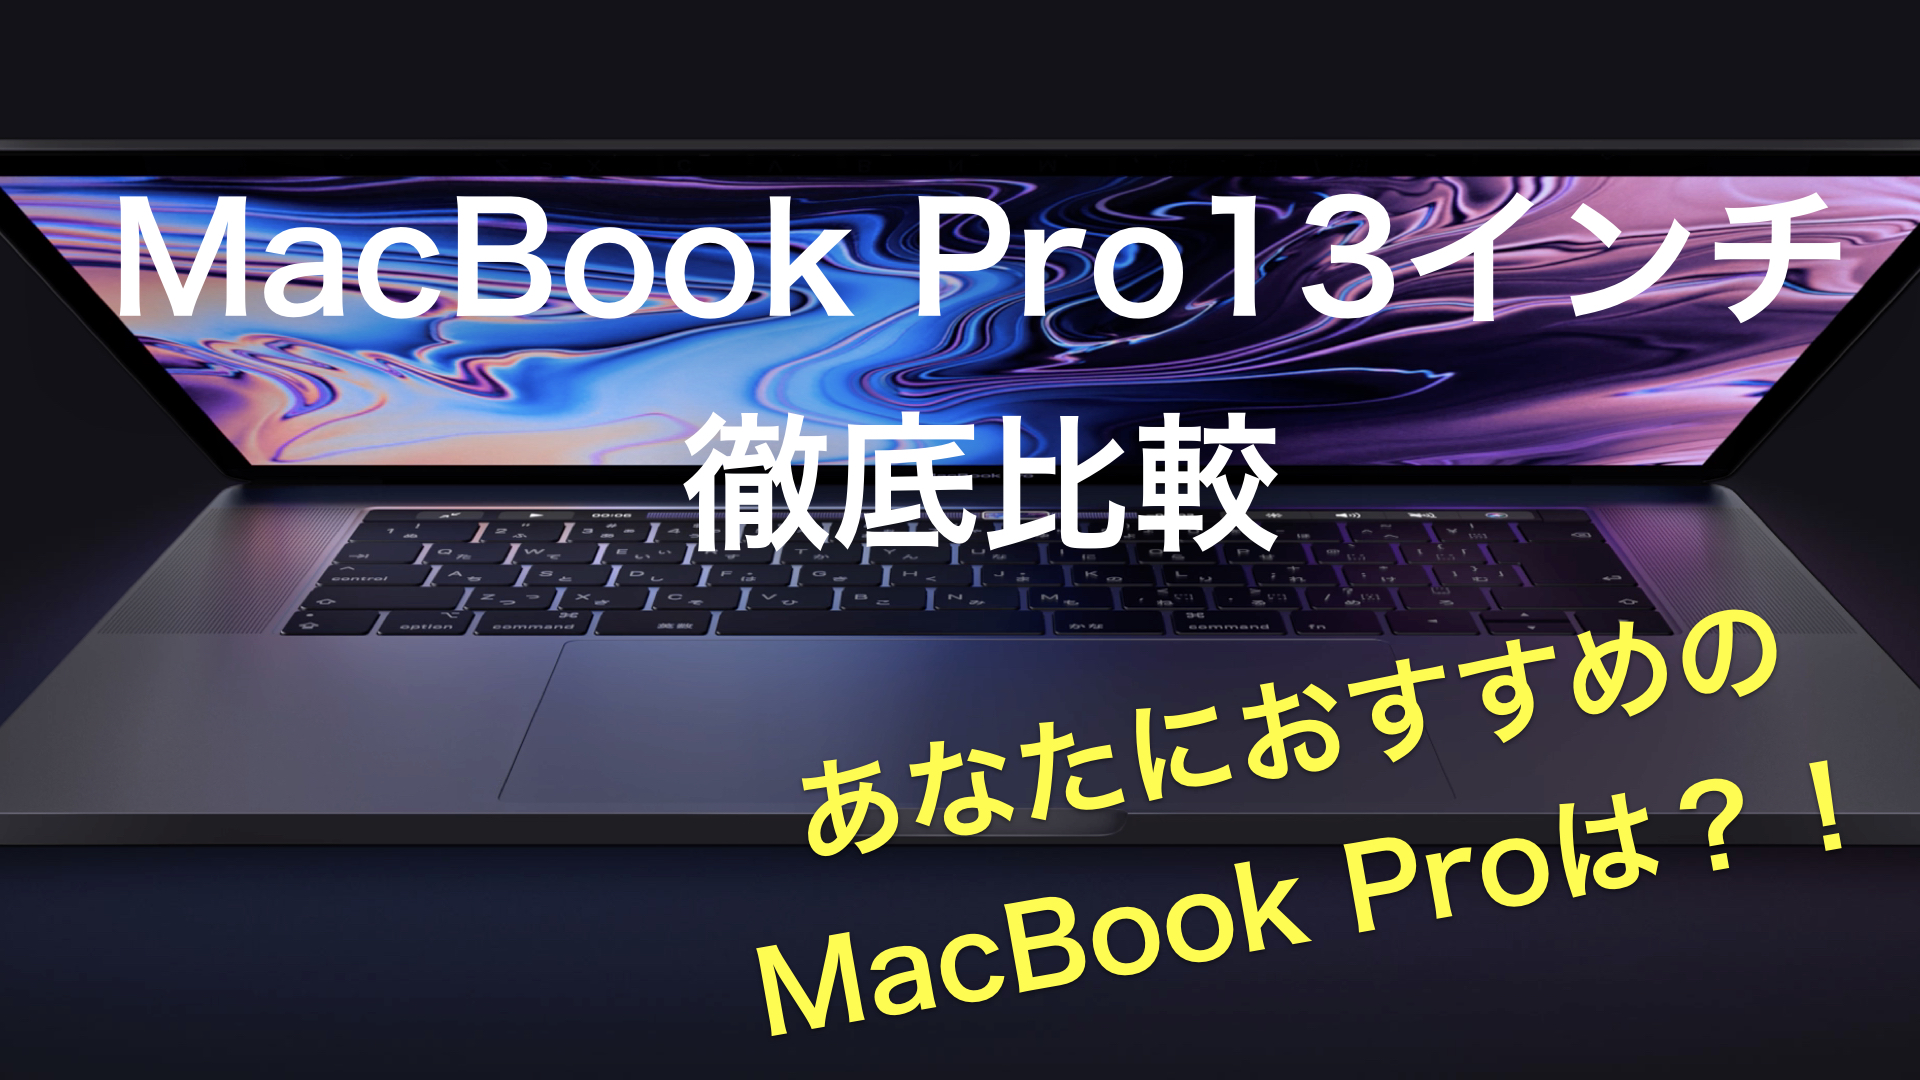 激安特価品 ★MacBook Pro13インチ★ ノートPC